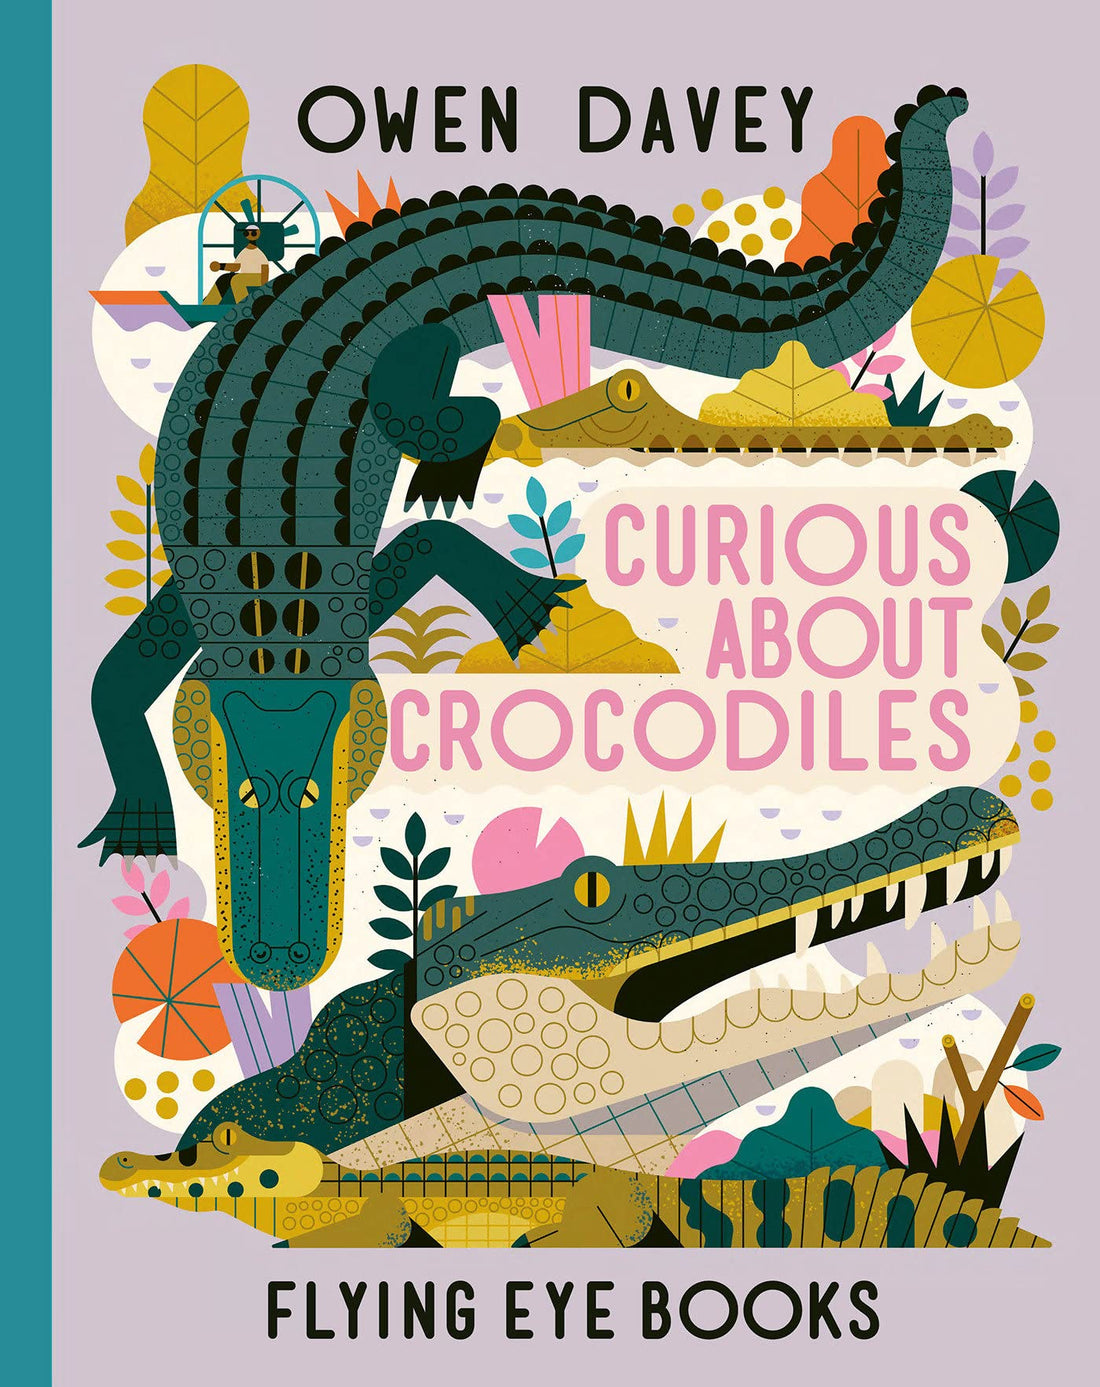 Curious About Crocodiles - Parkette.